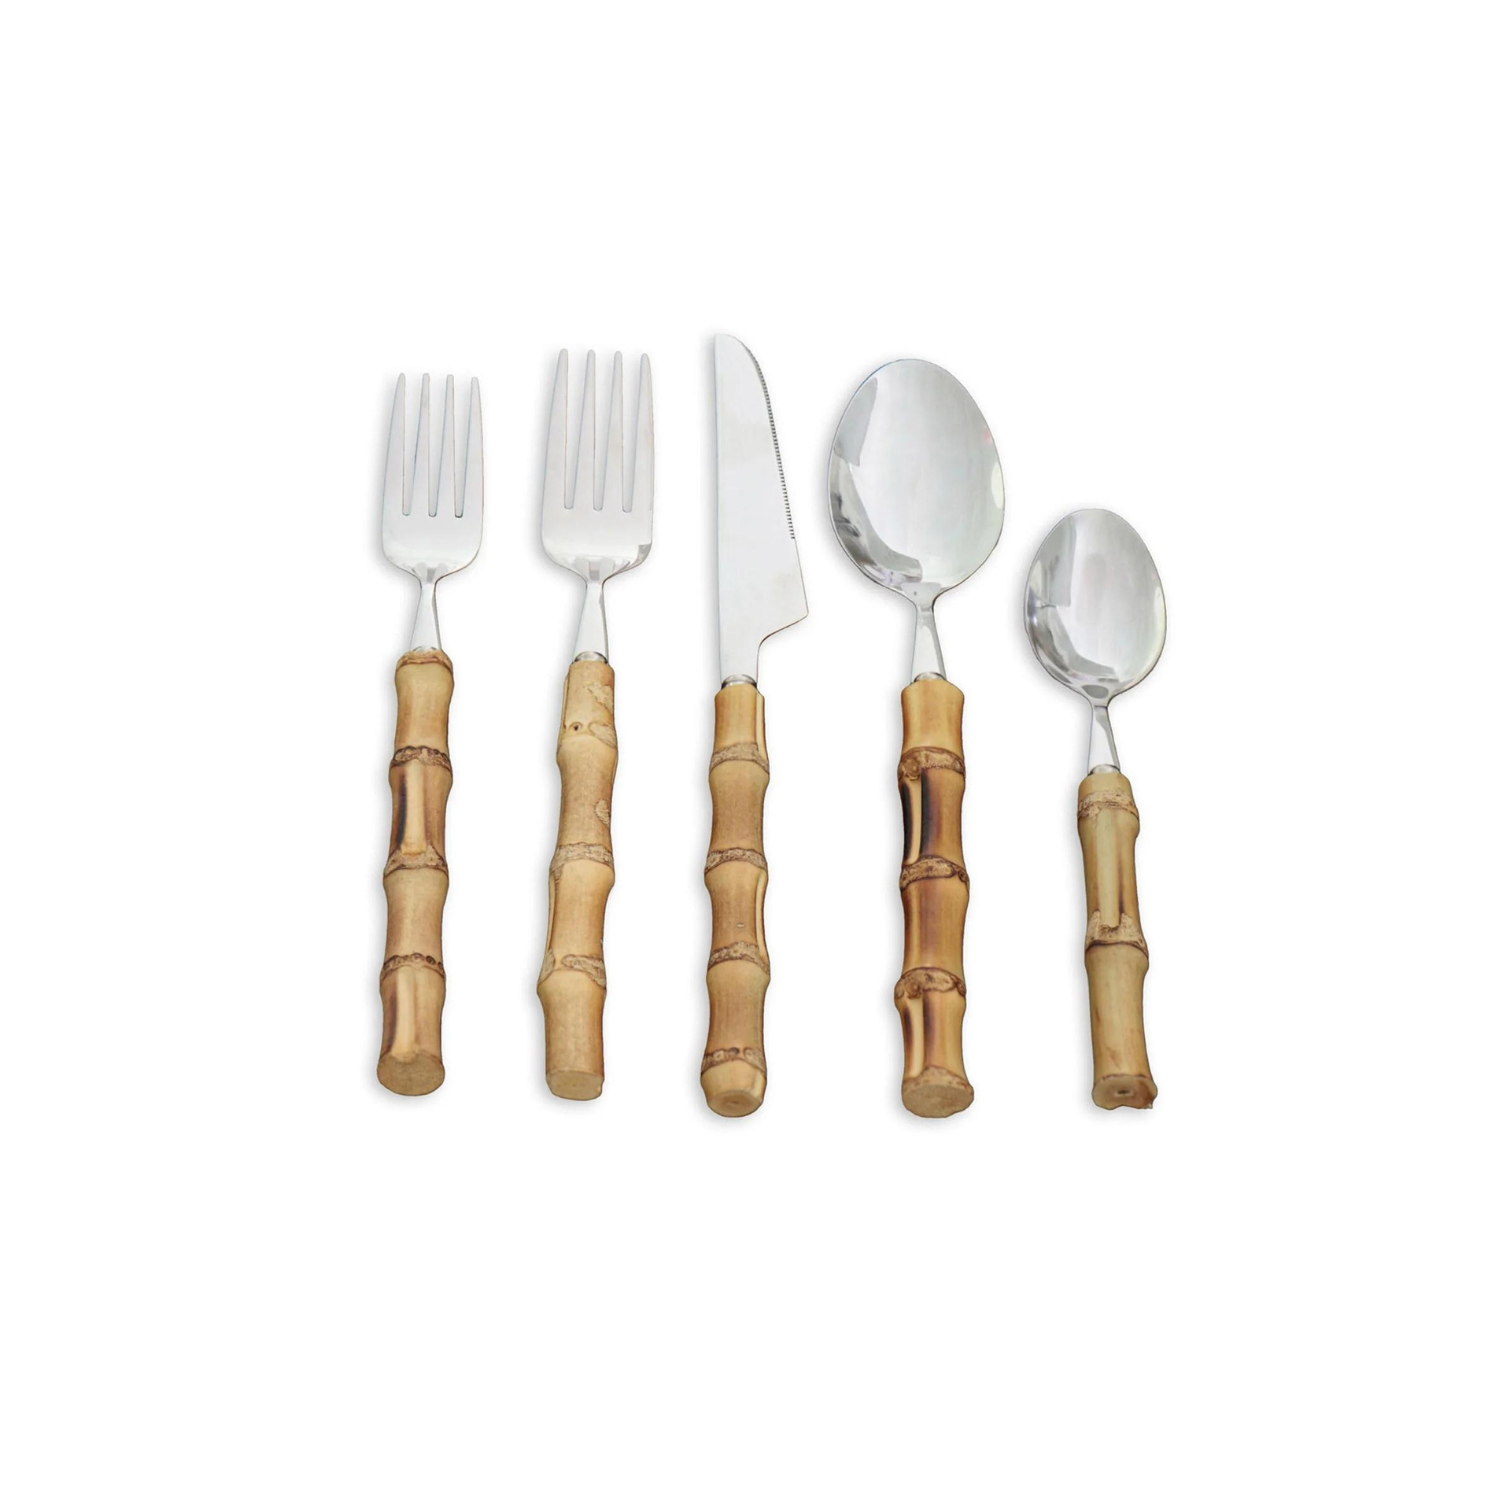 VIDA Bamboo Cutlery Set of 5 (Silver and Natural)